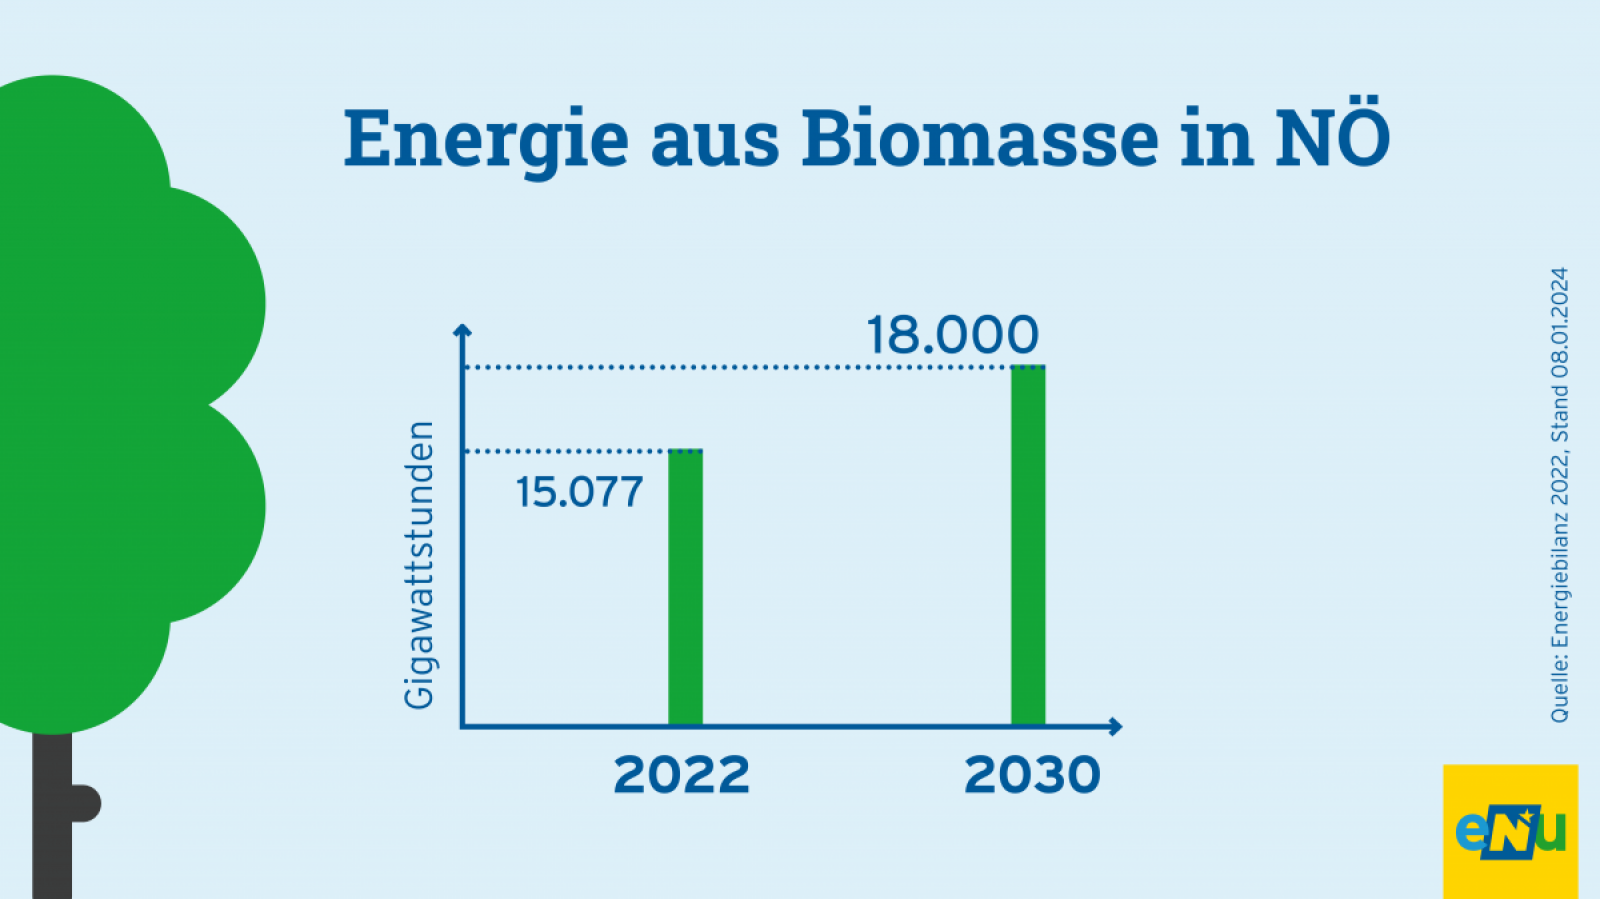 Grafik: 2020 wurden In NÖ 14.320 Gigawattstunden Energie aus Biomasse erzeugt. Bis 2030 soll der Wert auf 18.000 Gigawattstunden erhöht werden.